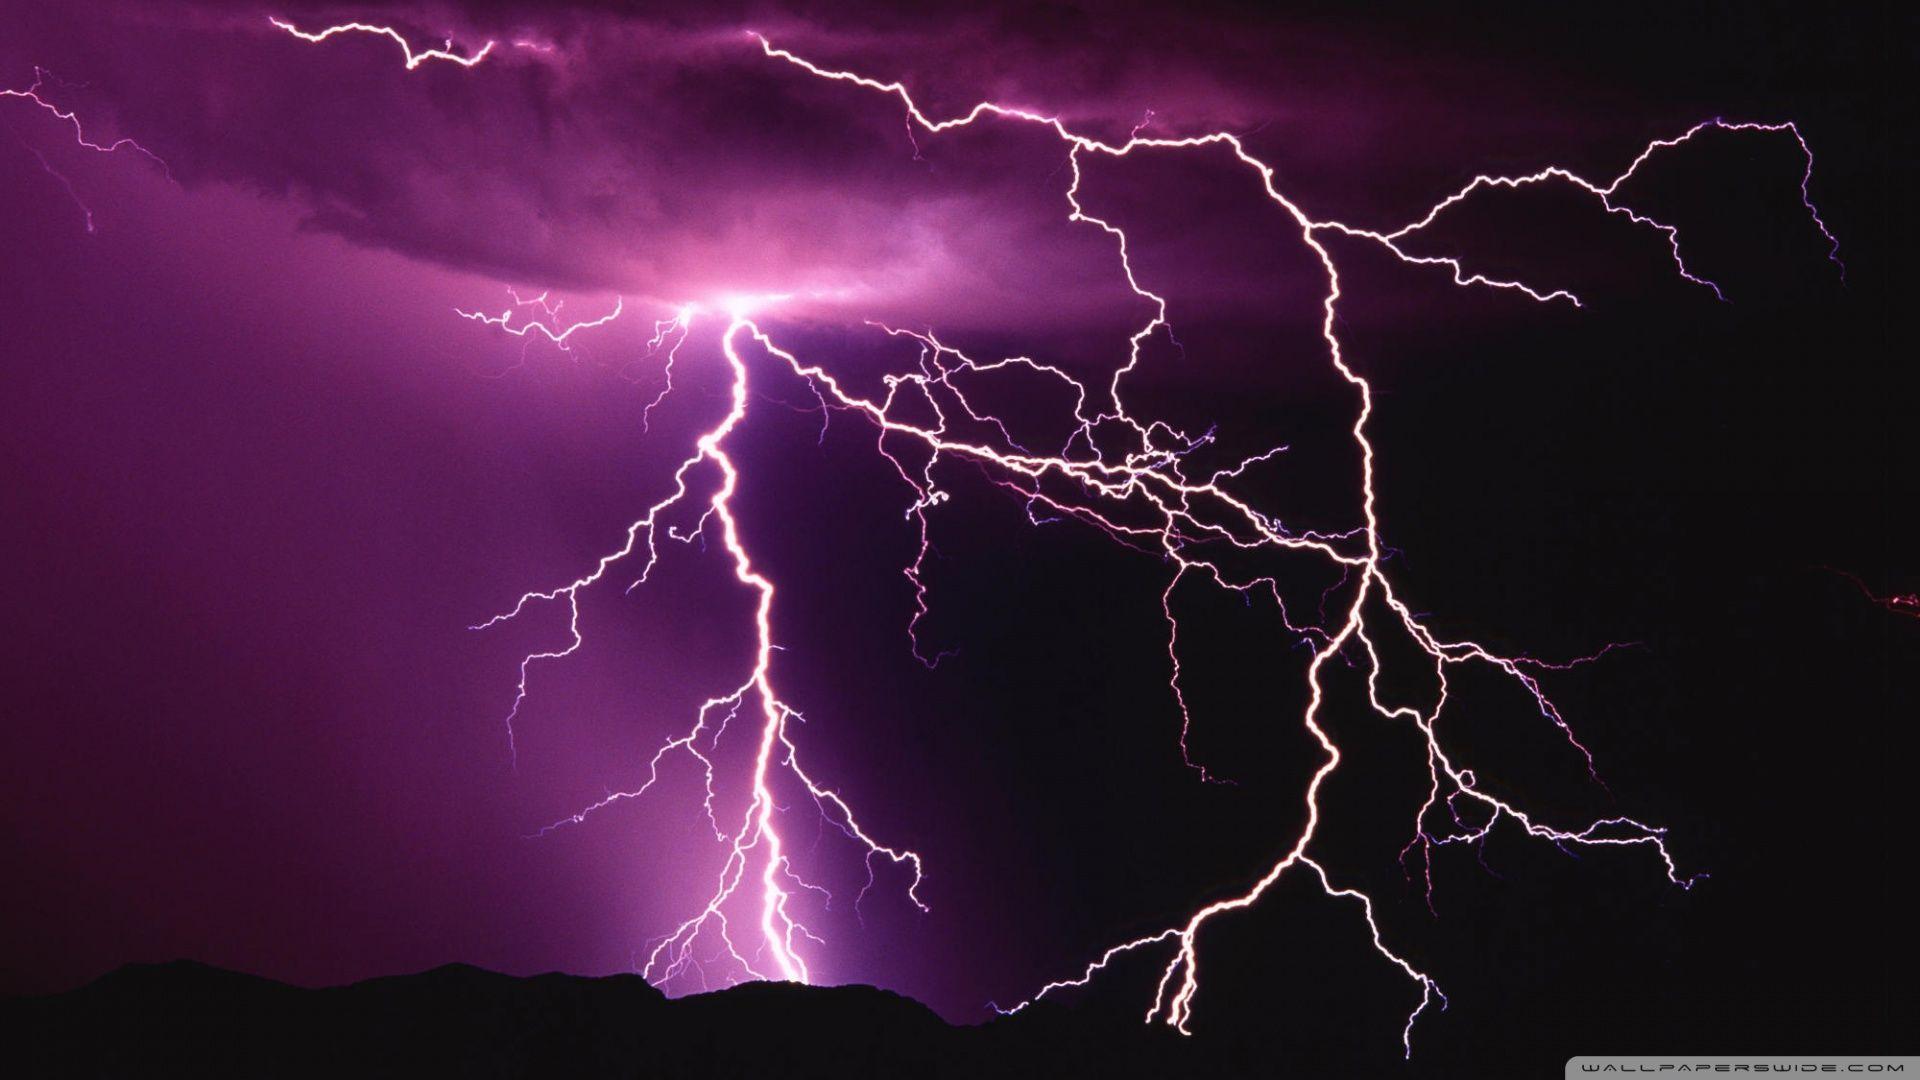 Lightning Storm HD desktop wallpaper, Widescreen, High